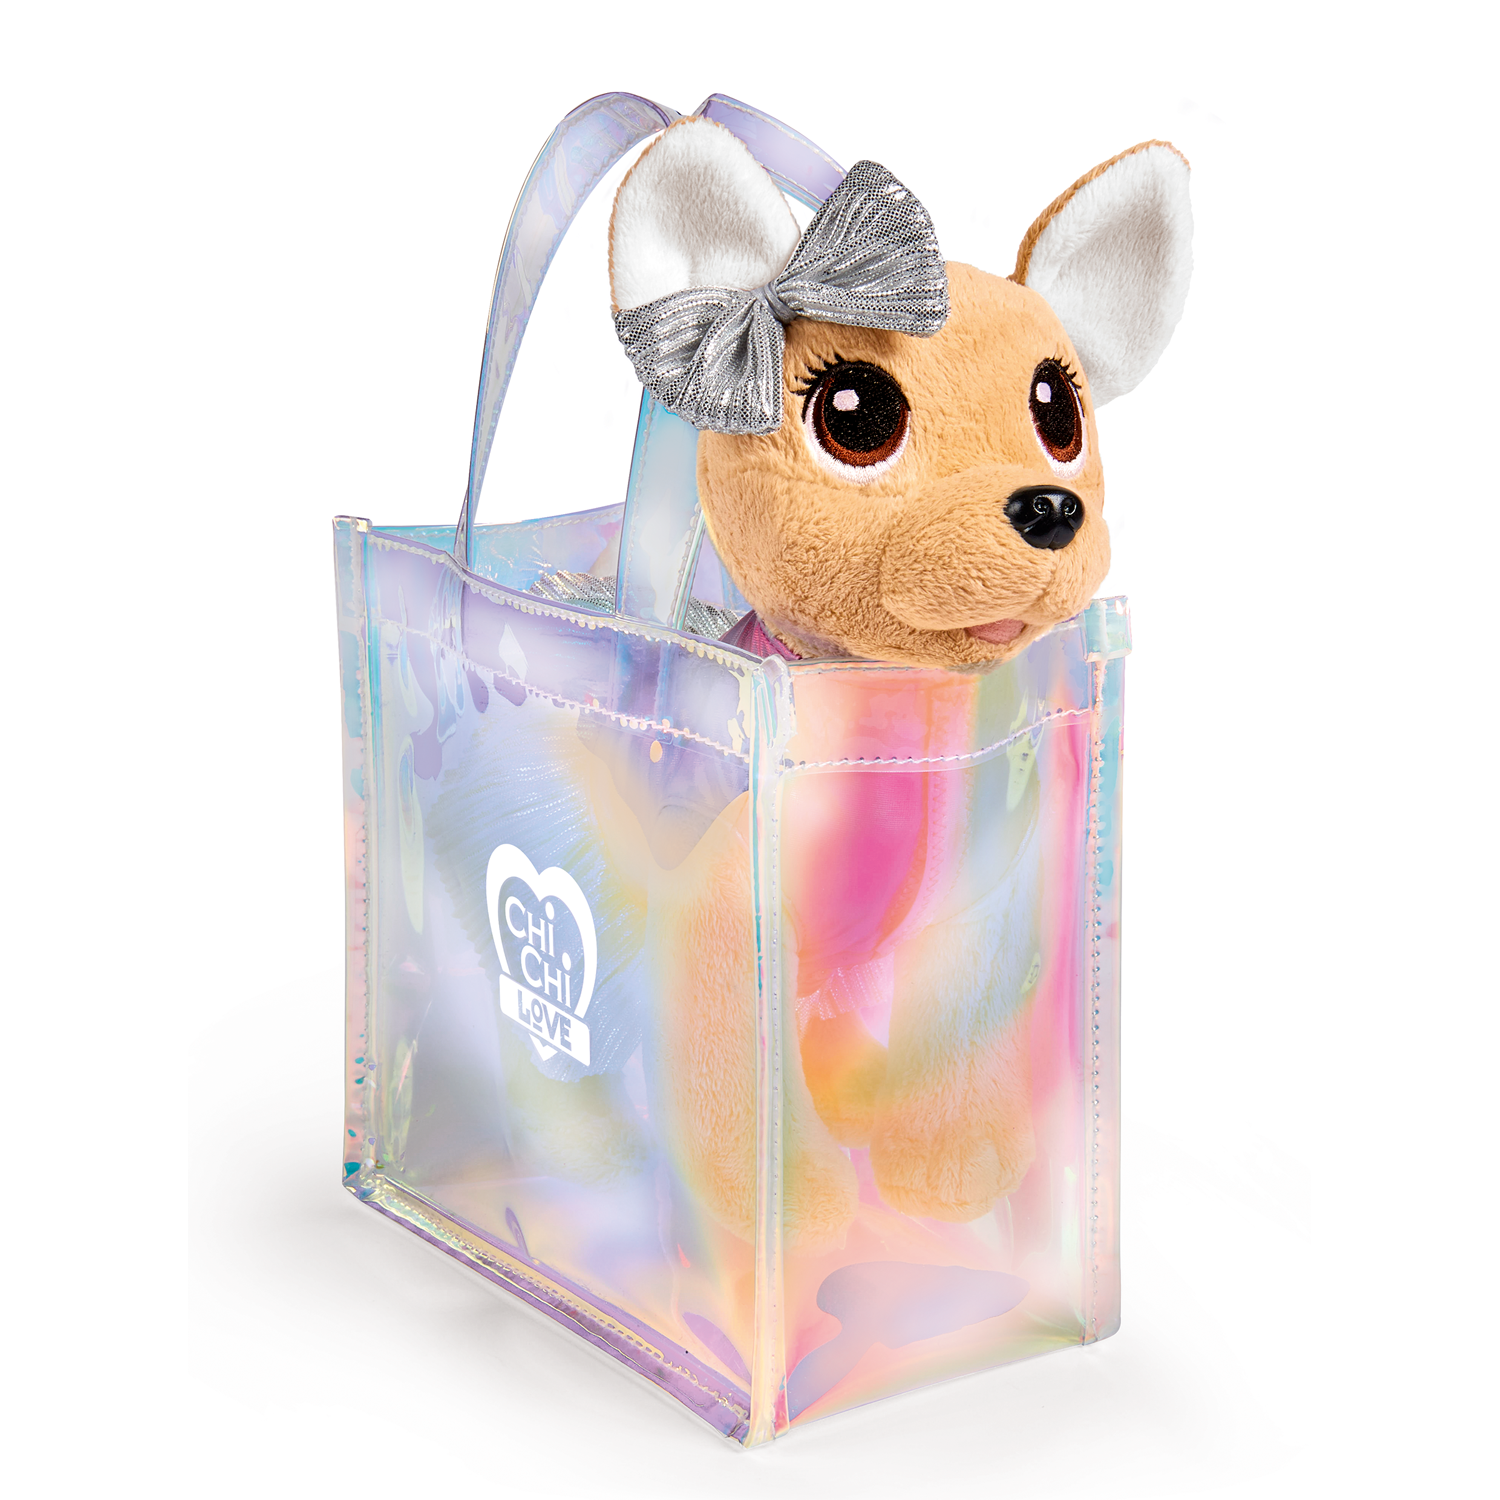 Мягкая игрушка Сhi Chi Love Плюшевая собачка 20 см в прозрачной сумочке 5893432-МП - фото 1